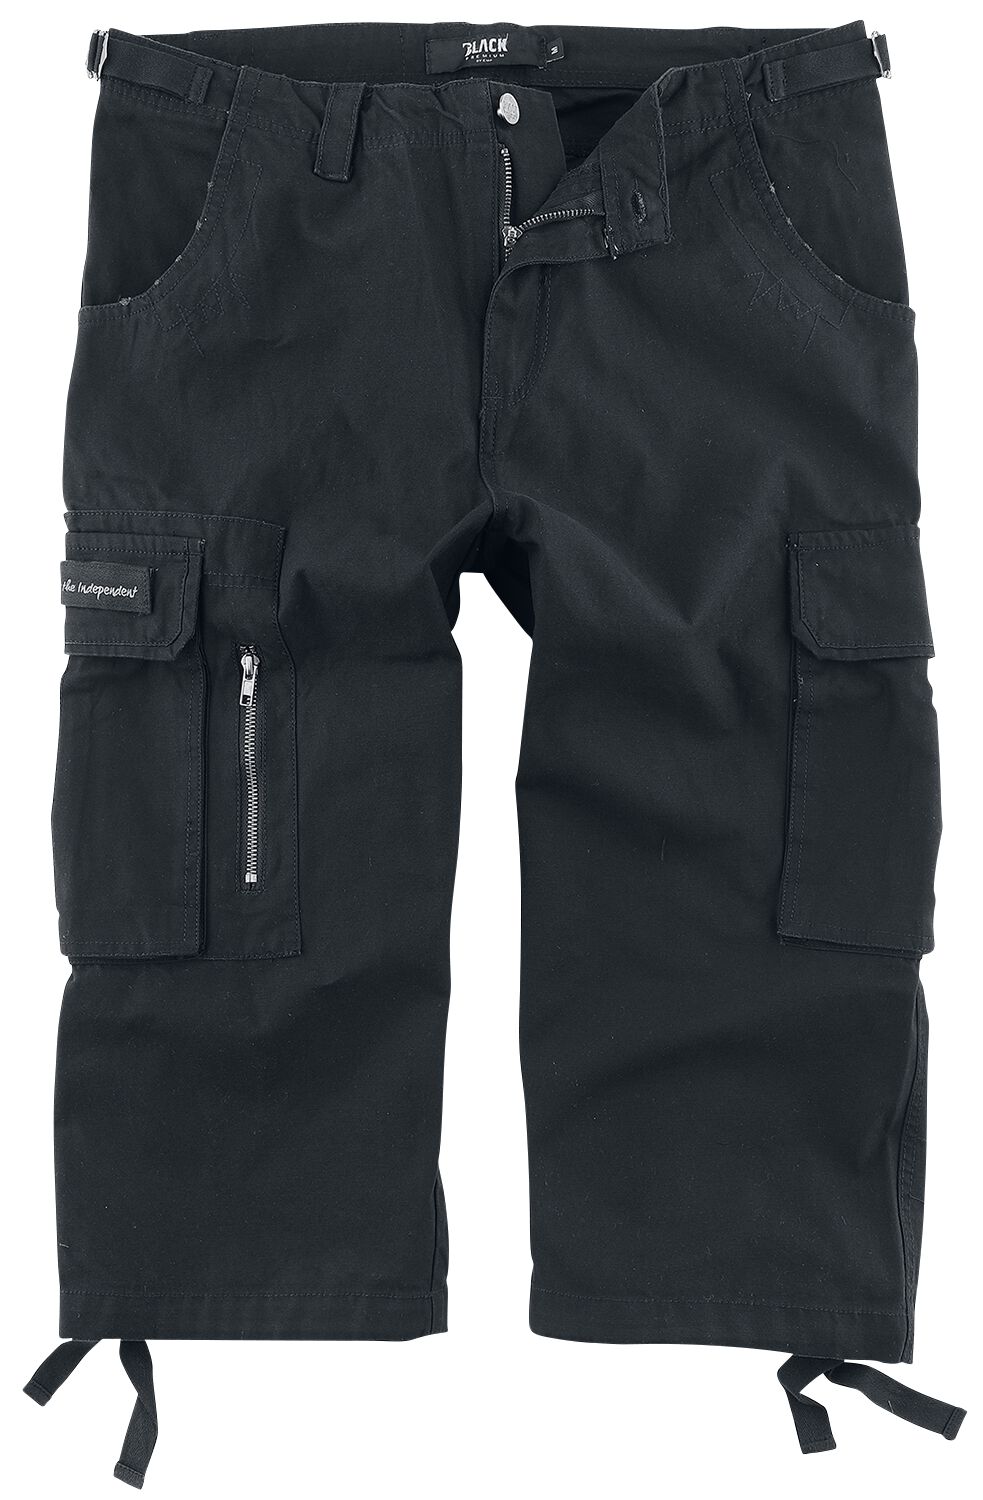 Black Premium by EMP 3/4 Army Vintage Shorts Short schwarz in 5XL